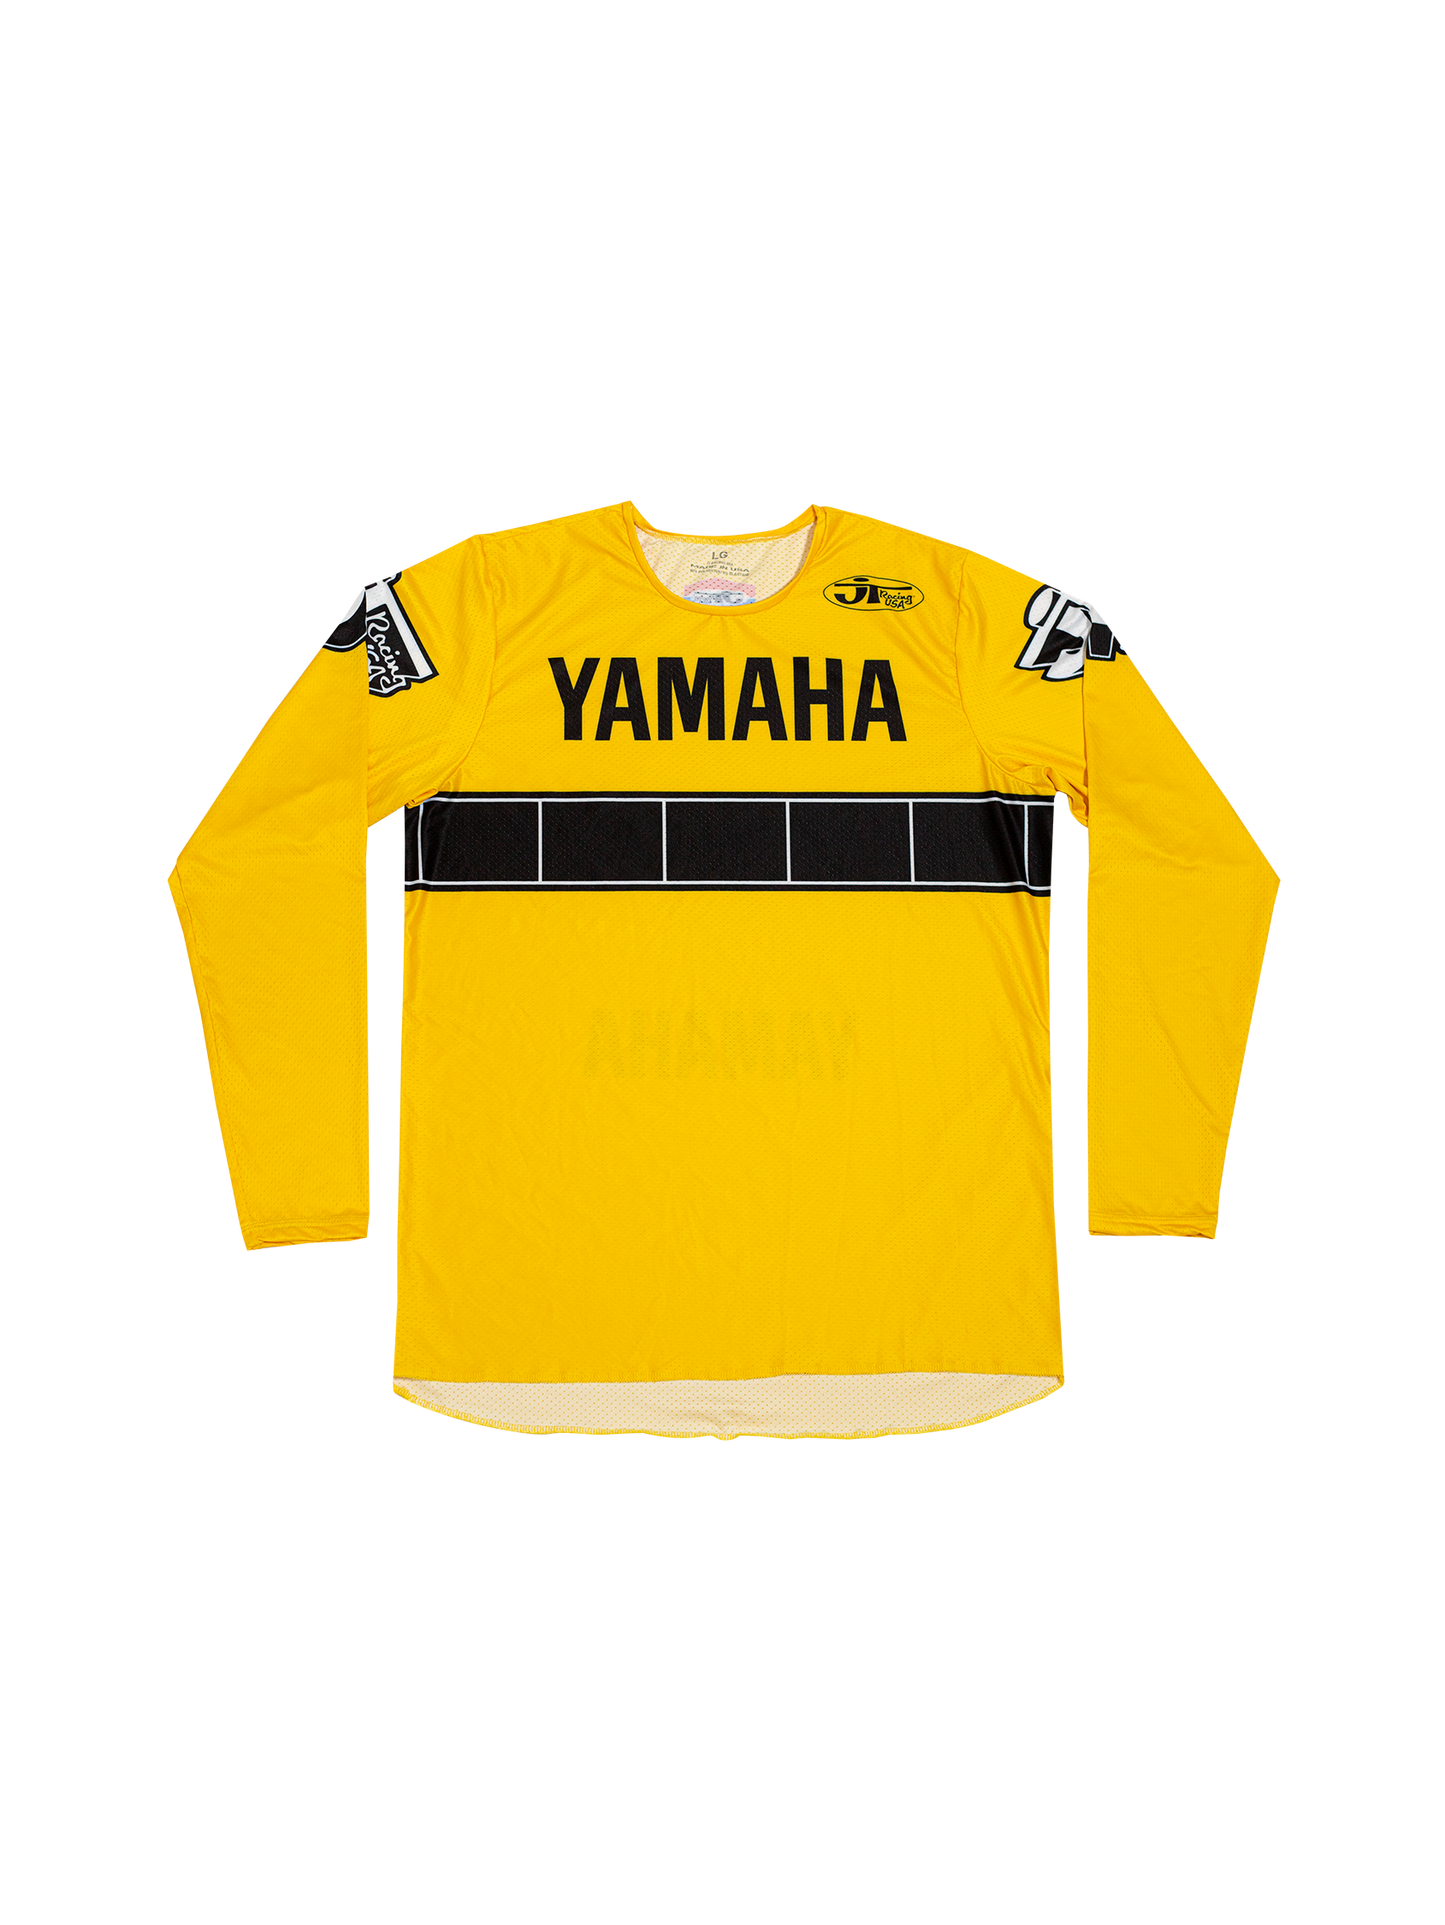 JT Racing Team Yamaha 1974 Jersey - Yellow/Black